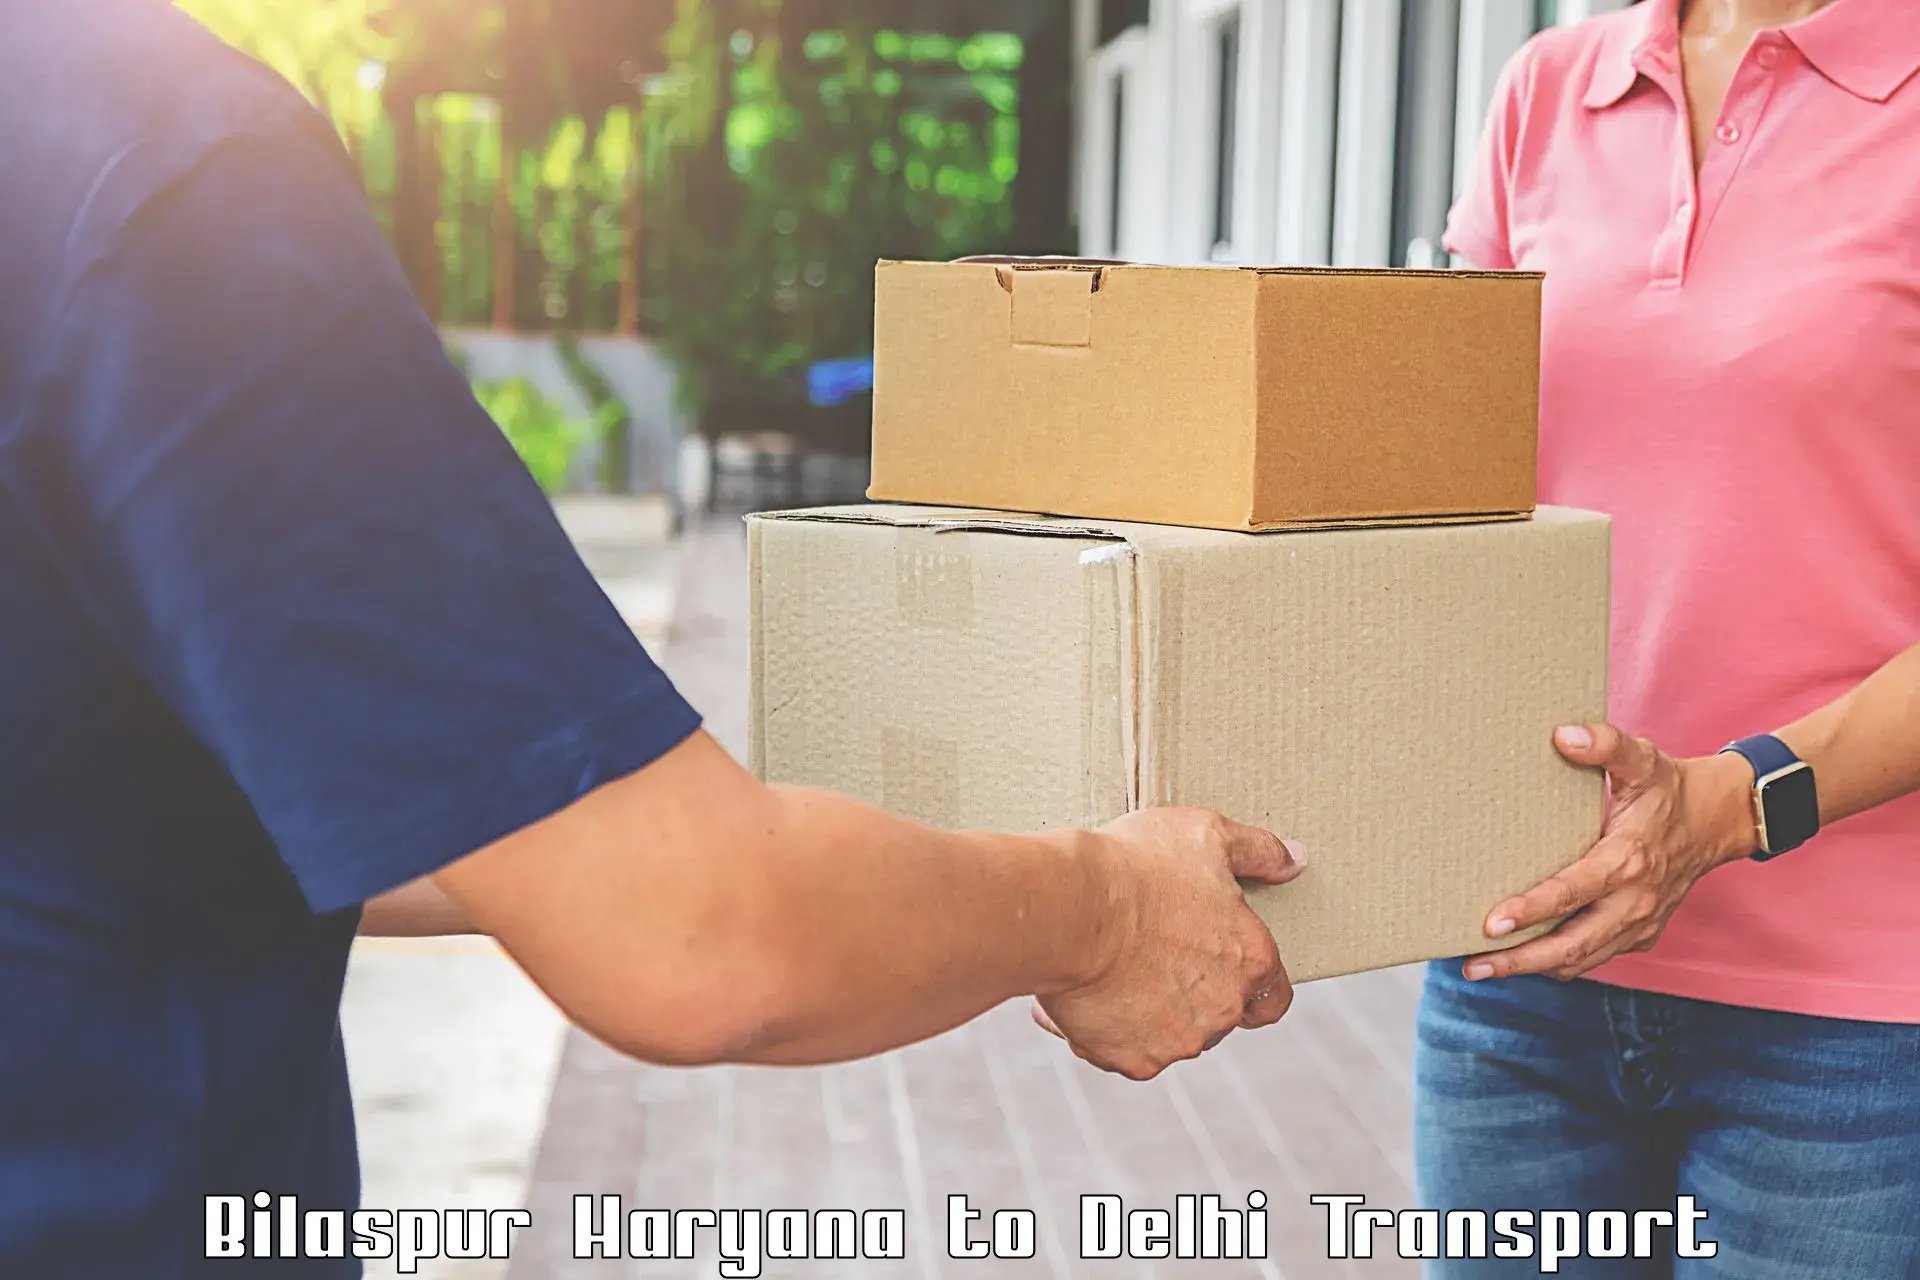 Scooty parcel in Bilaspur Haryana to Delhi